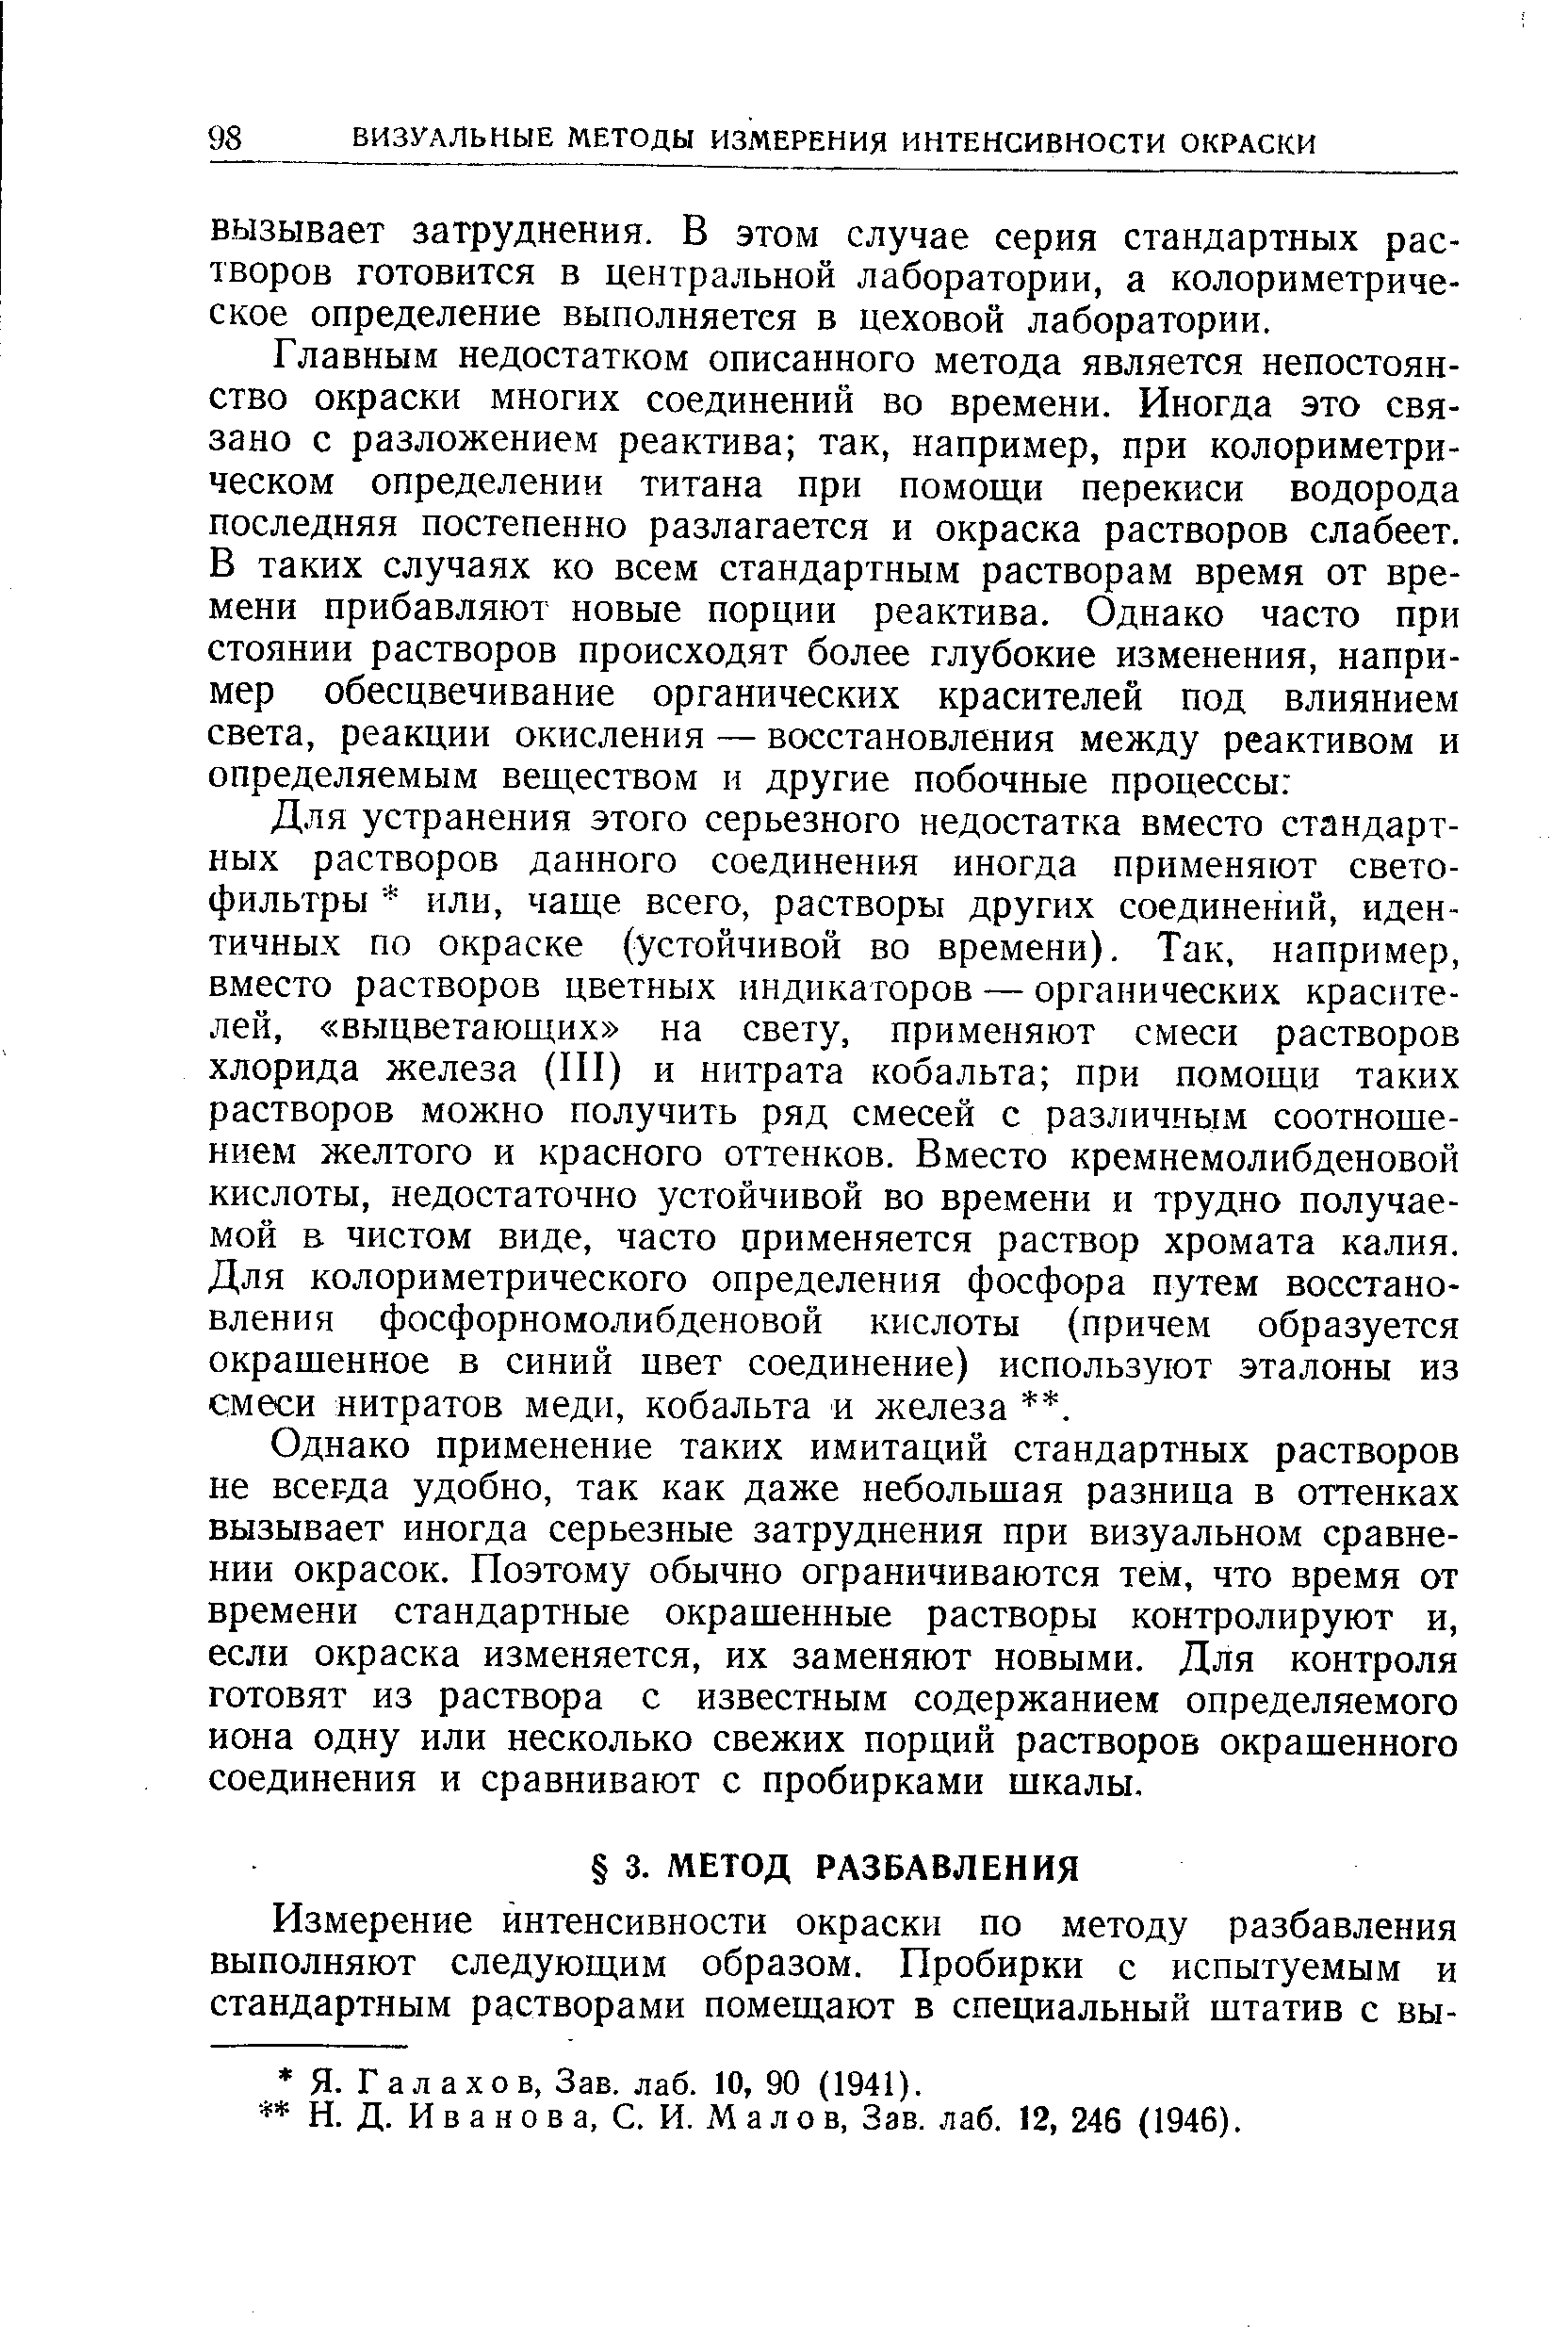 Иванова, С. И. М а лов, Зав. лаб. 12, 246 (1946).